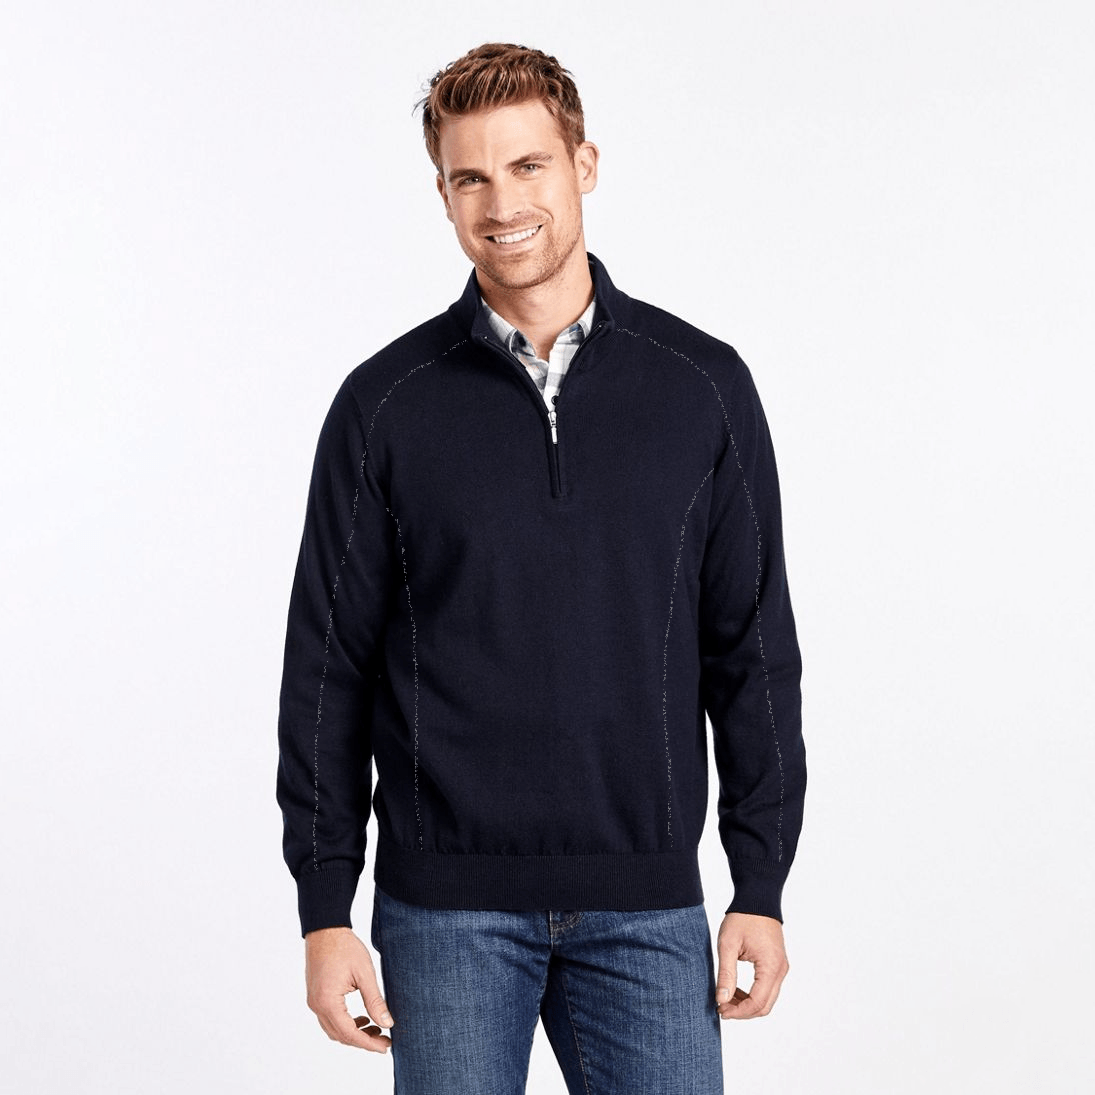 EGL Men's 1/4 Zipper Exquisite Fleece Sweatshirt Men's Sweat Shirt Image Navy XS 